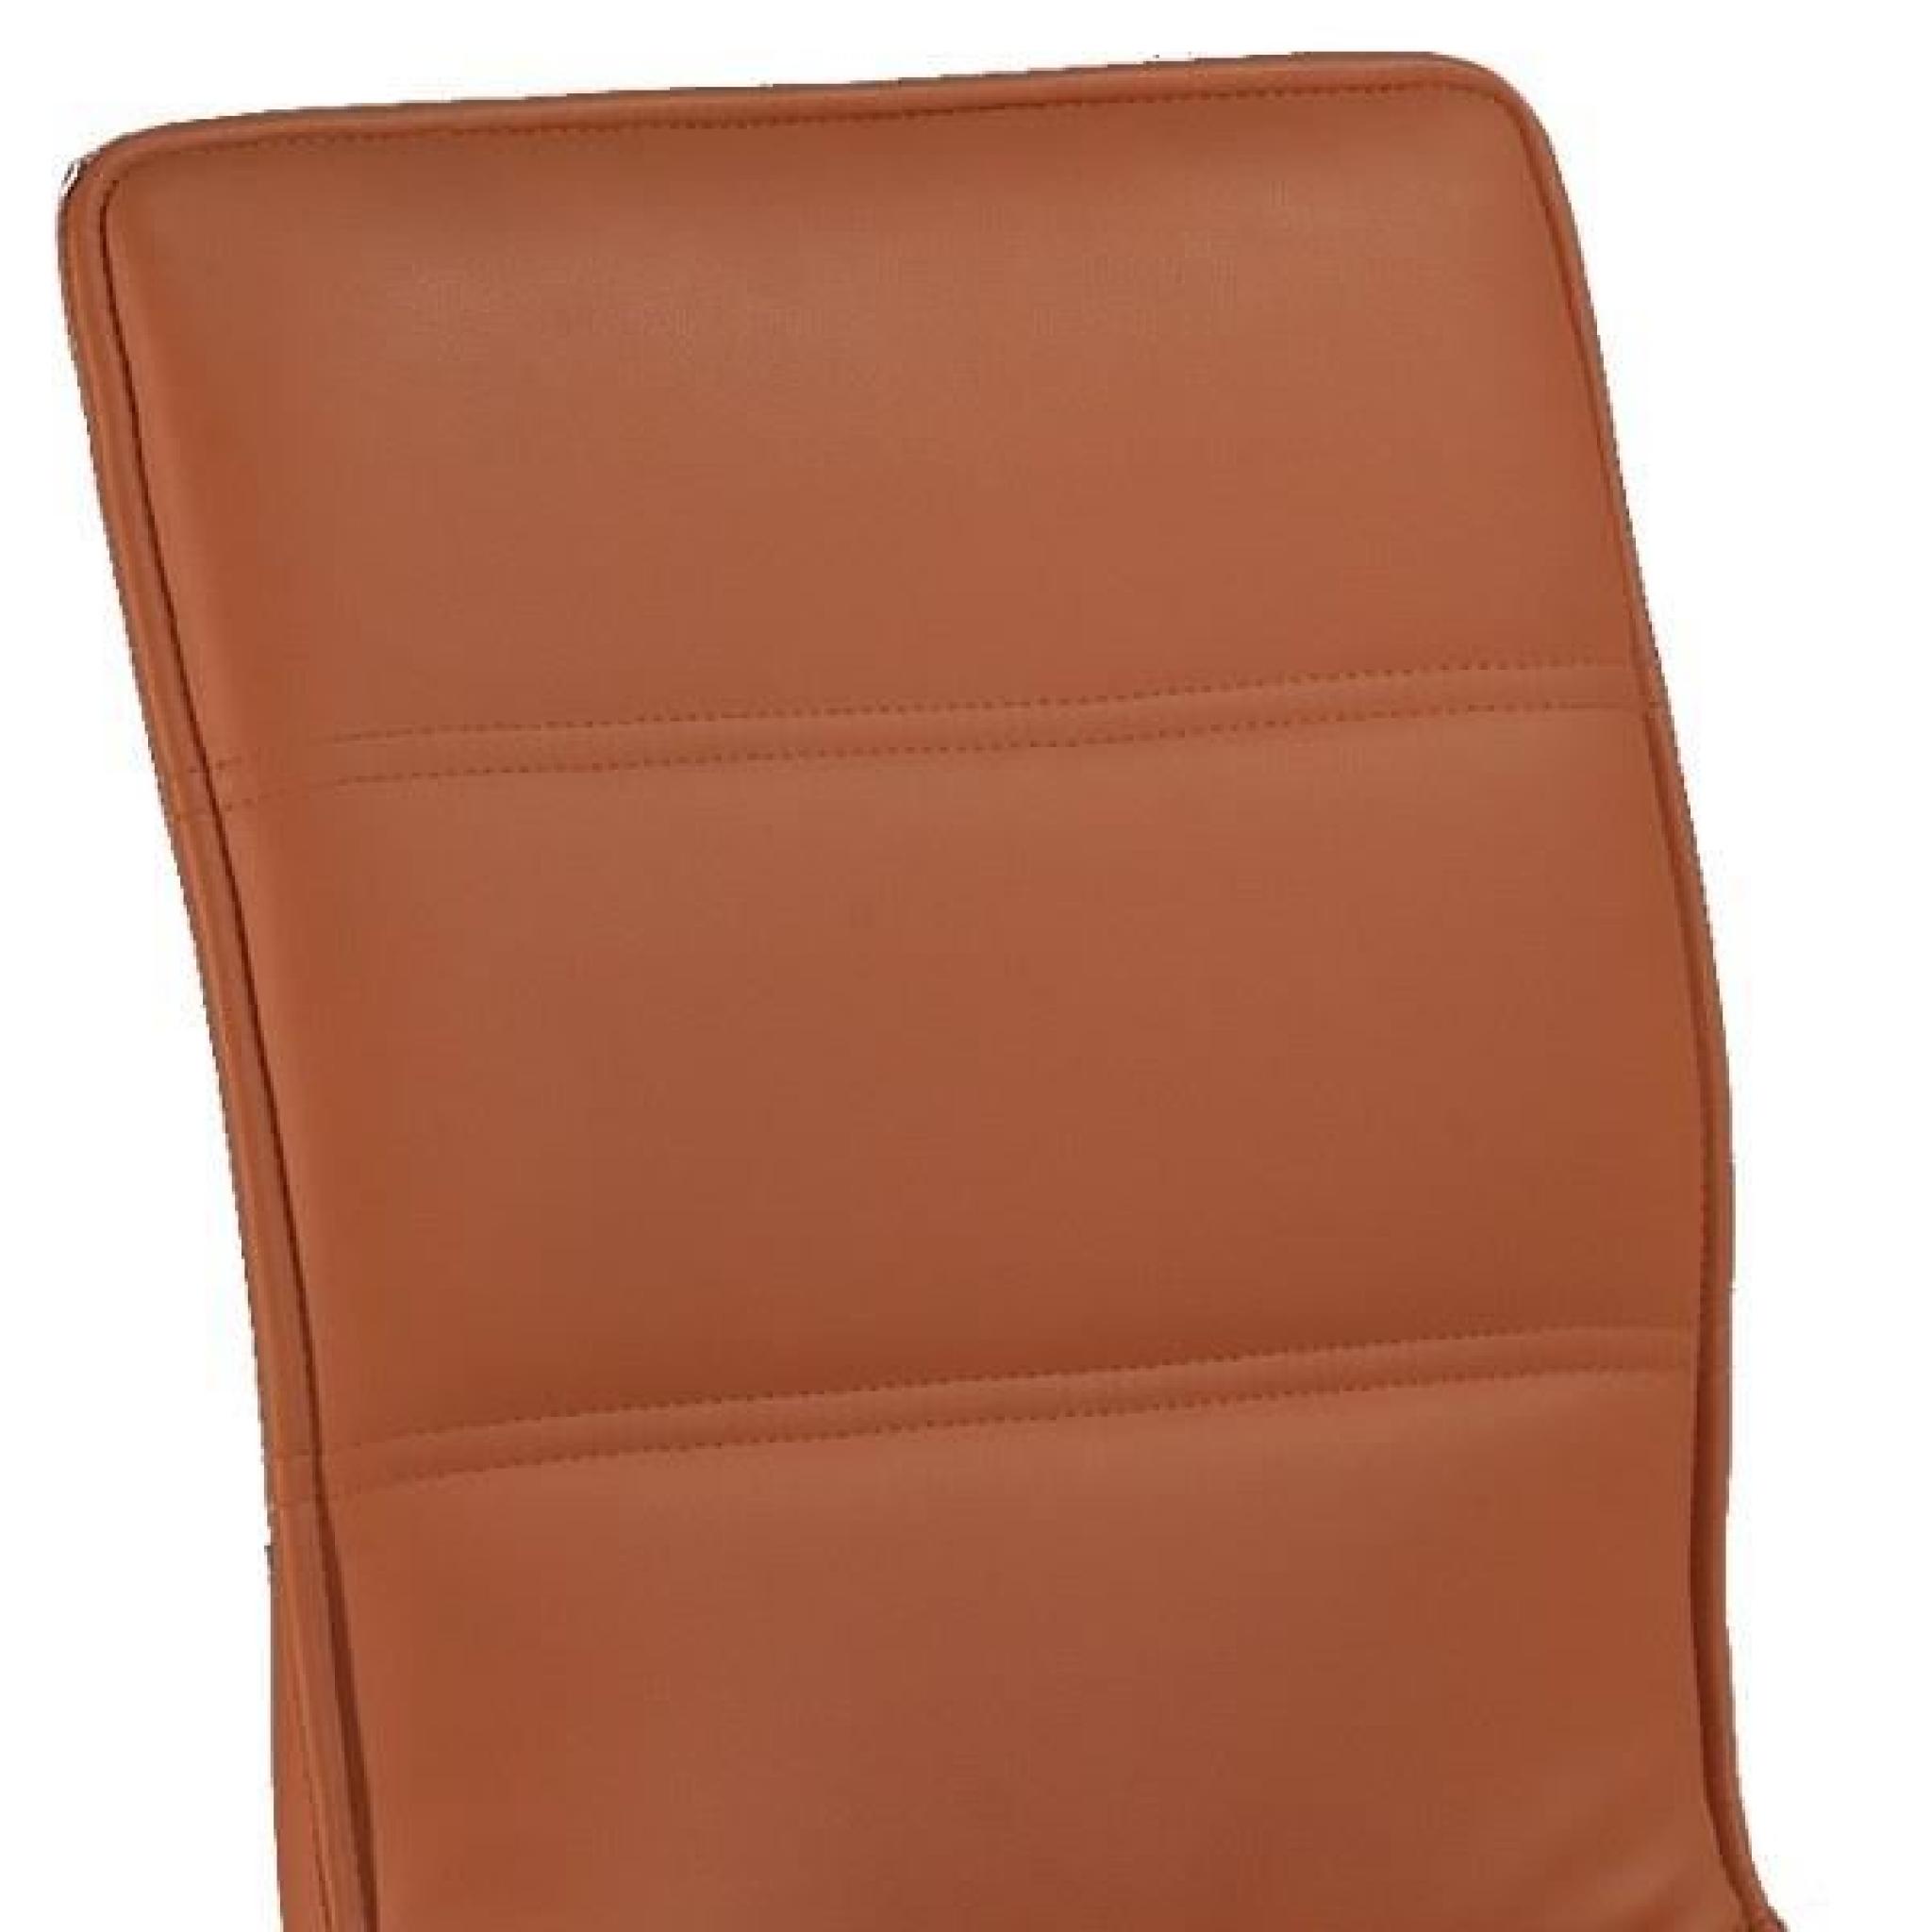 Duo de chaises simili cuir Orange - KANO - L 43 x l 53 x H 88 cm pas cher